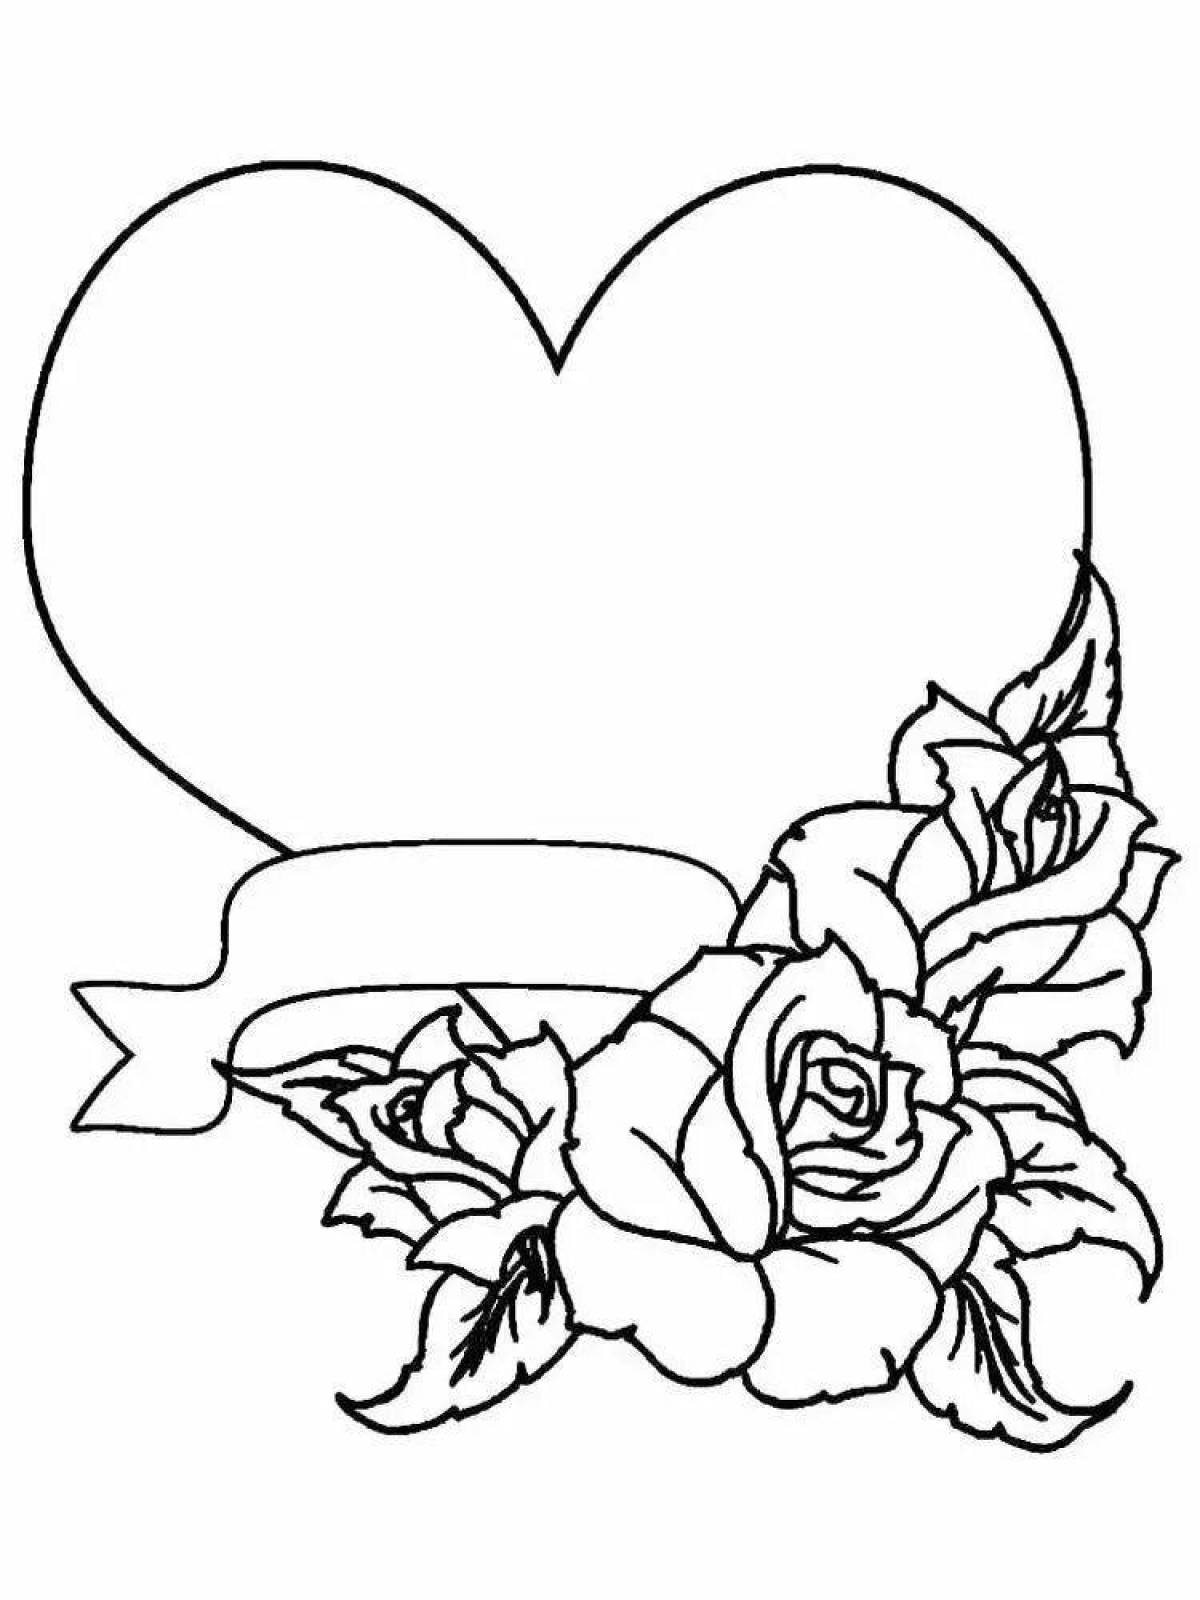 Красивые рисунки для открытки. Раскраски сердечки и цветы. Роза раскраска. Сердечко с цветами раскраска. Раскраска сердечко с цветочками.